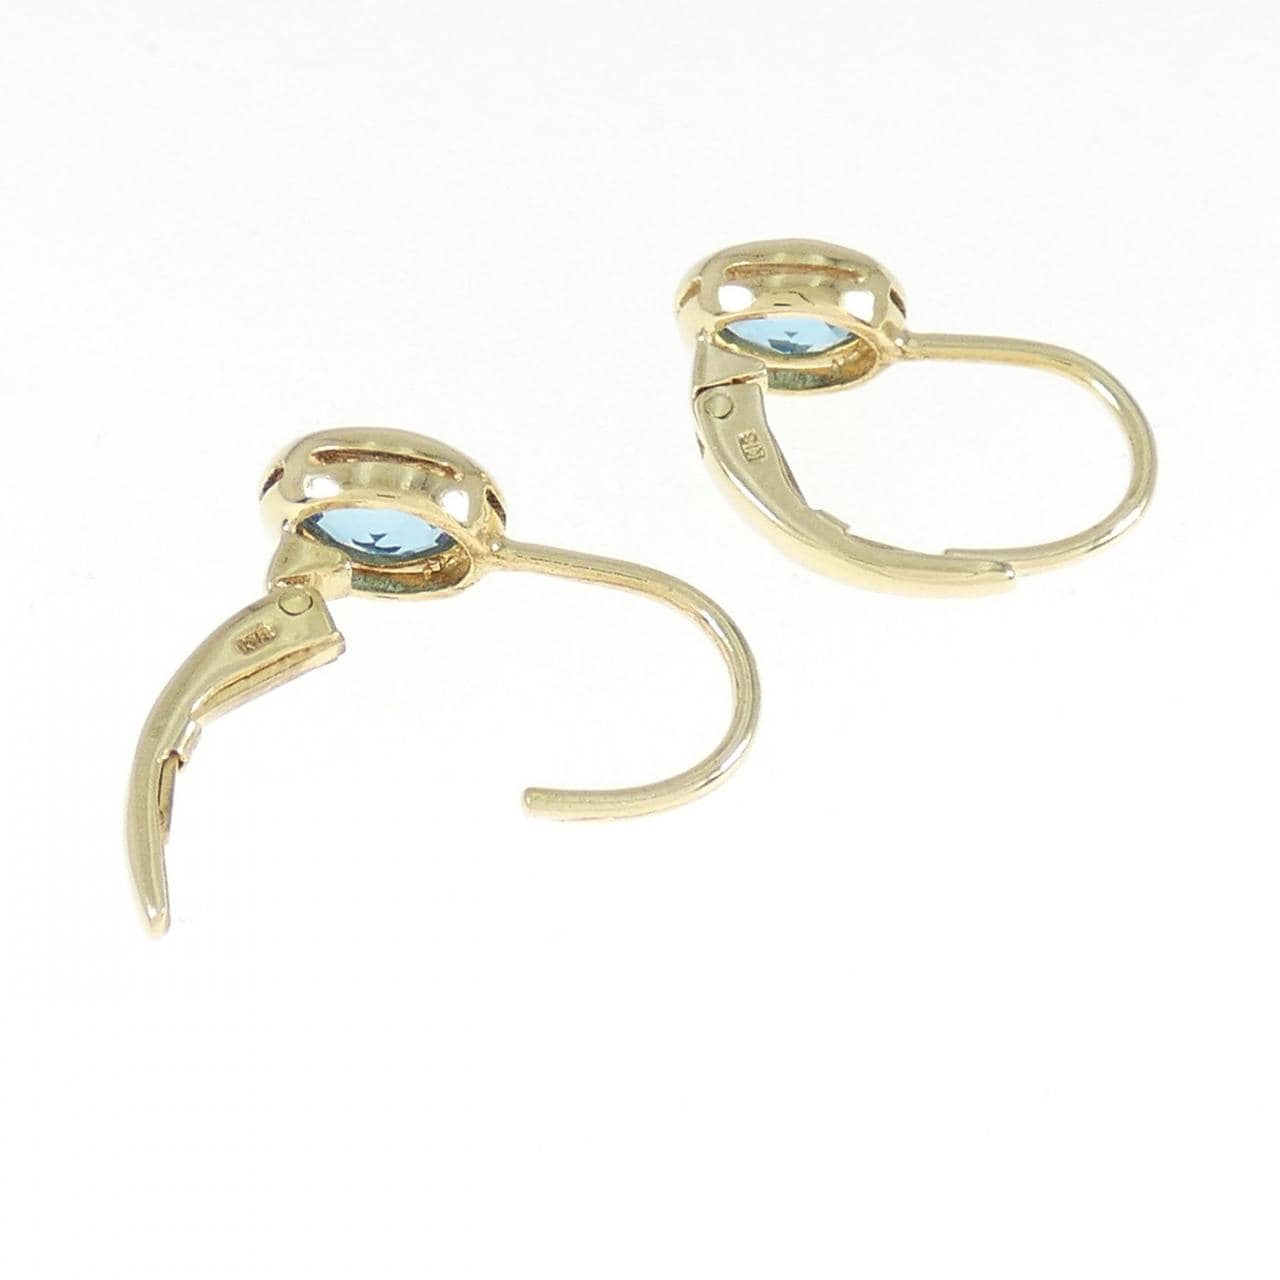 K18YG blue Topaz earrings